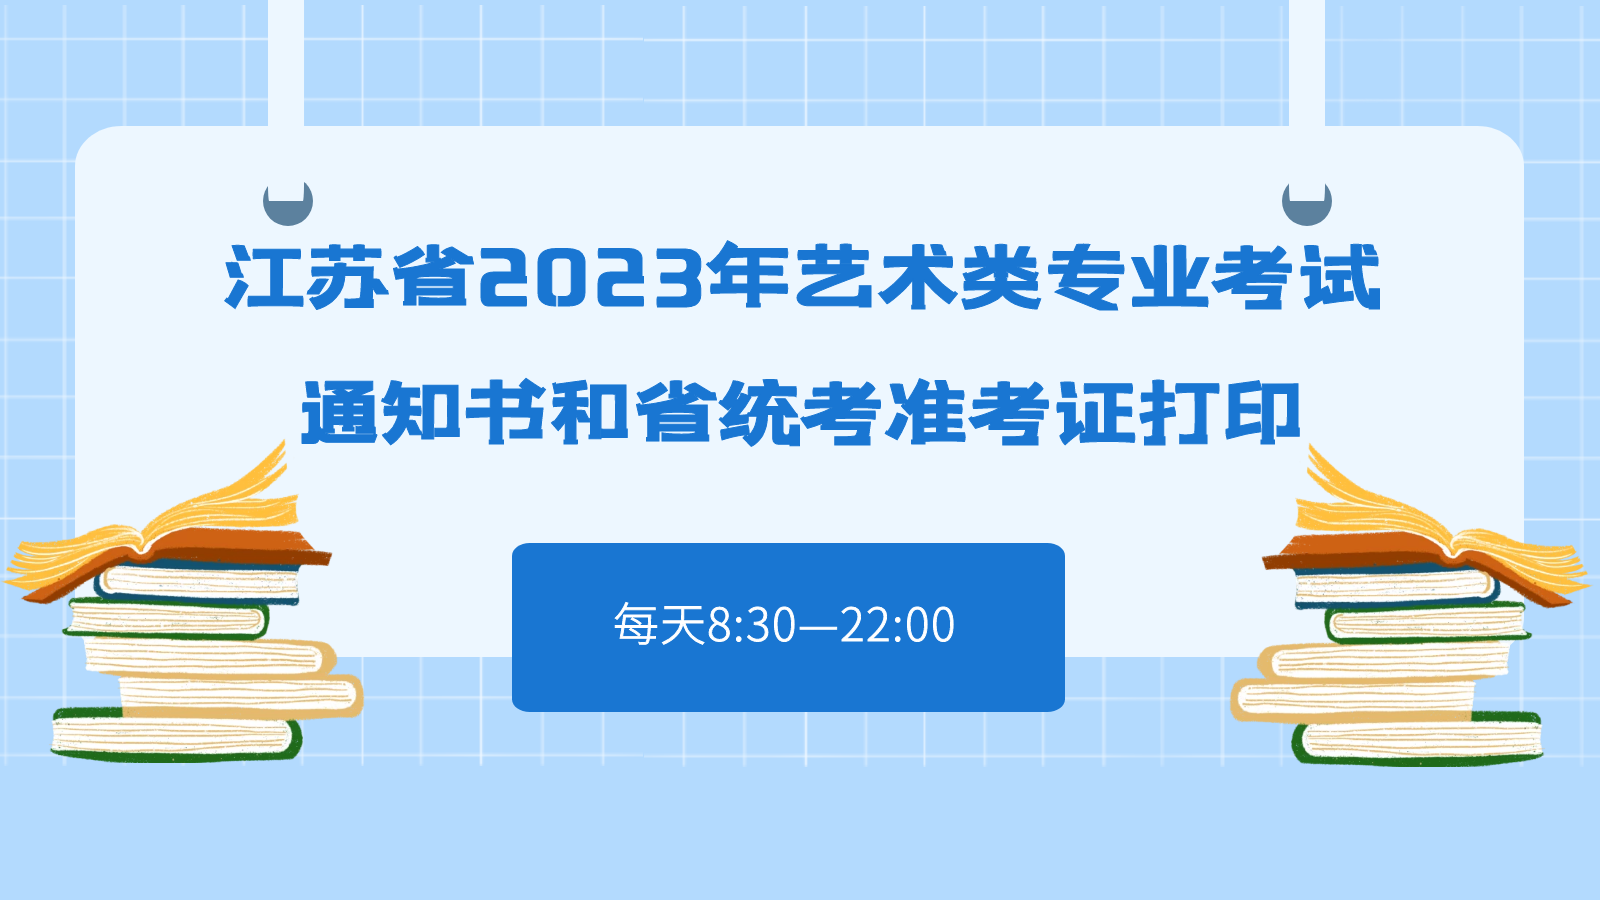 江苏省2023年艺术类专业考试通知书和省统考准考证打印